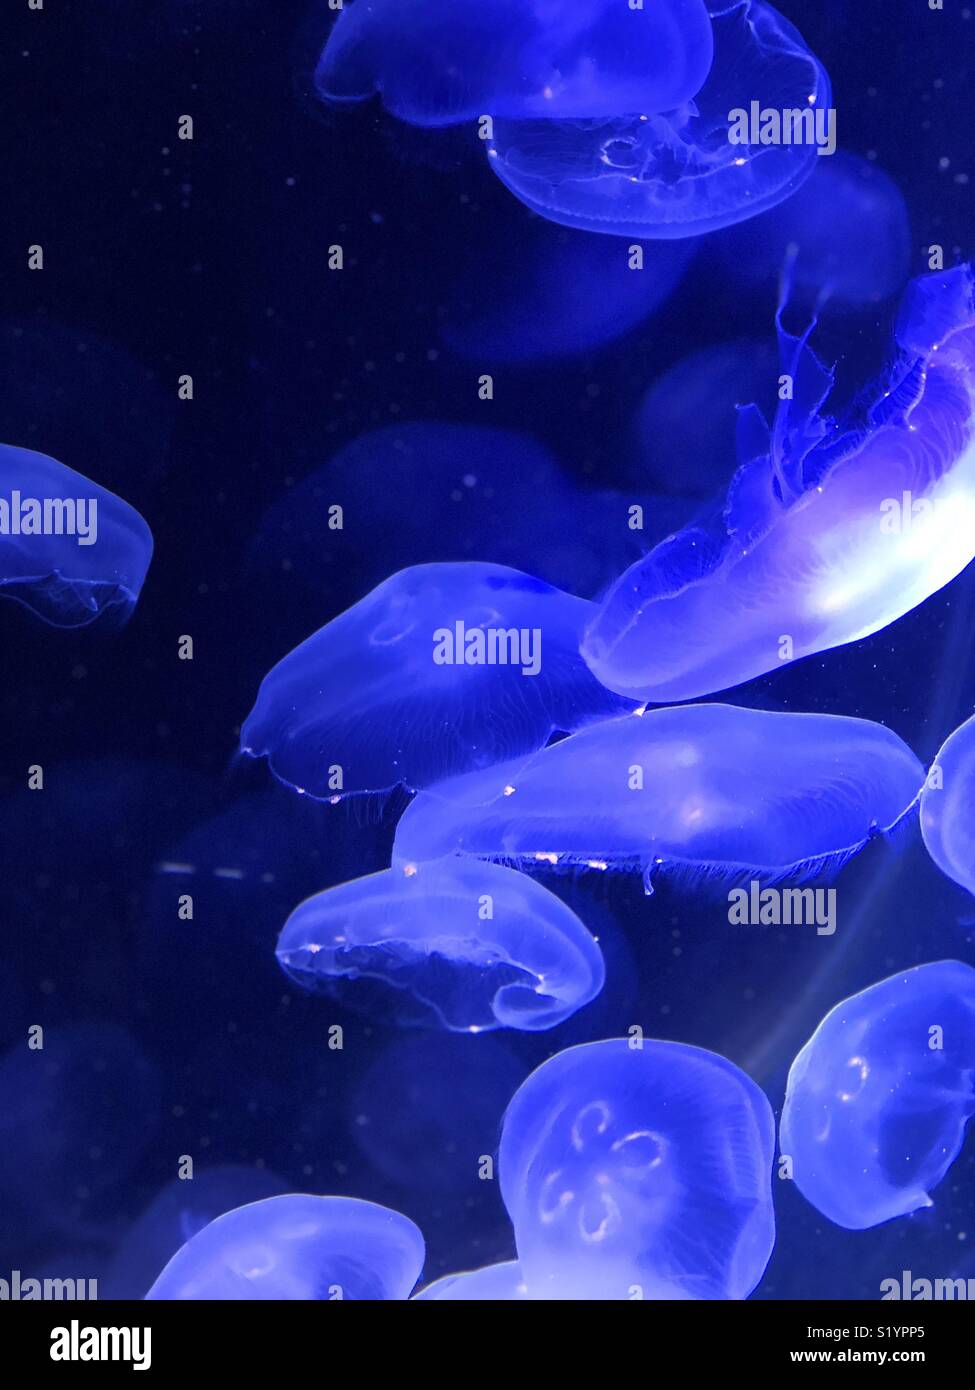 Blue moon jelly fish Stock Photo